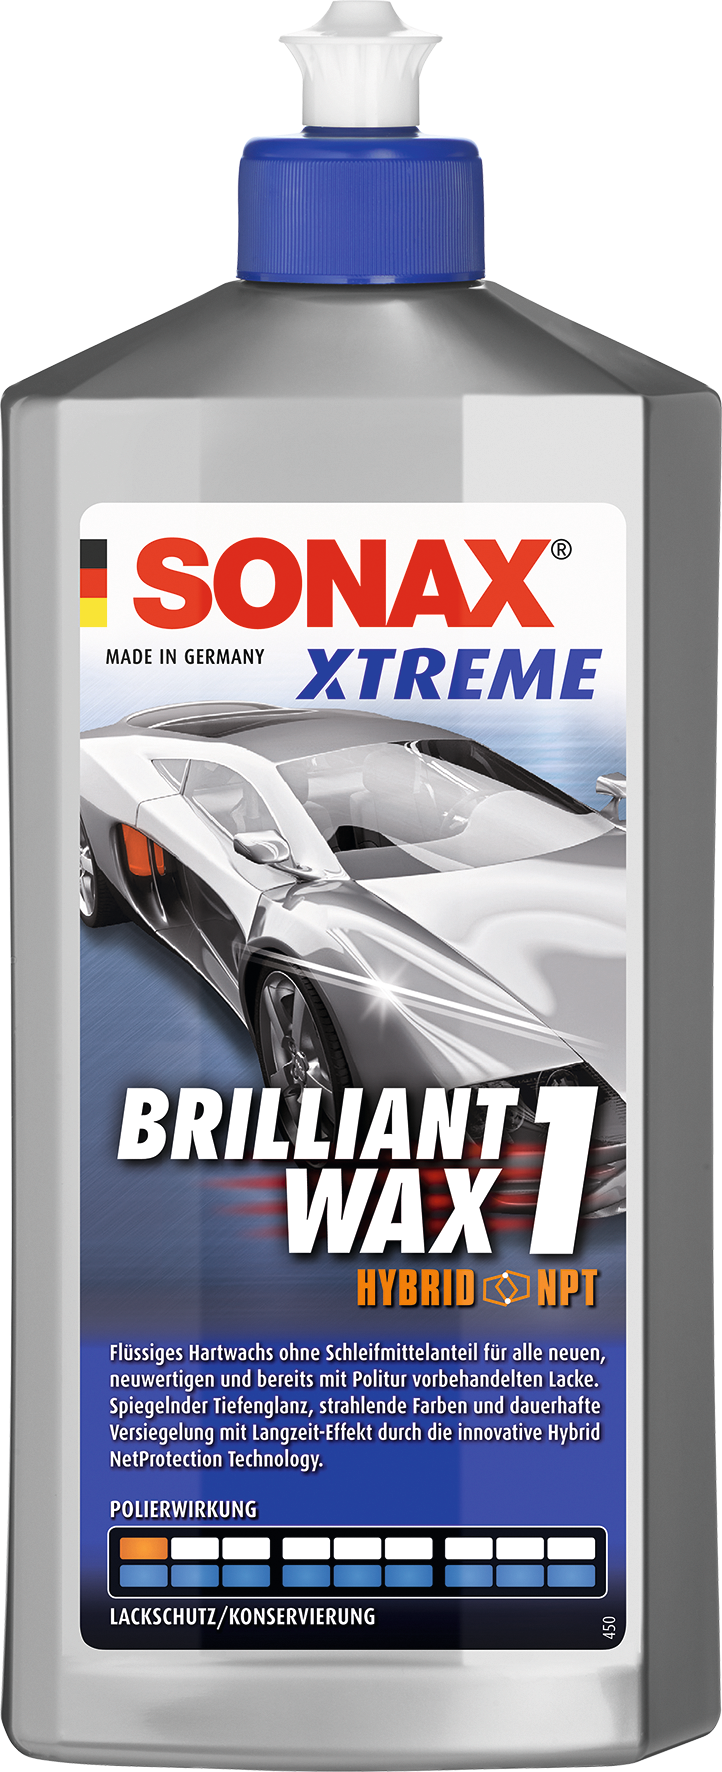 Schleifpolitur/Wachs Xtreme 500ml Brilliant Wax 1 Hybrid